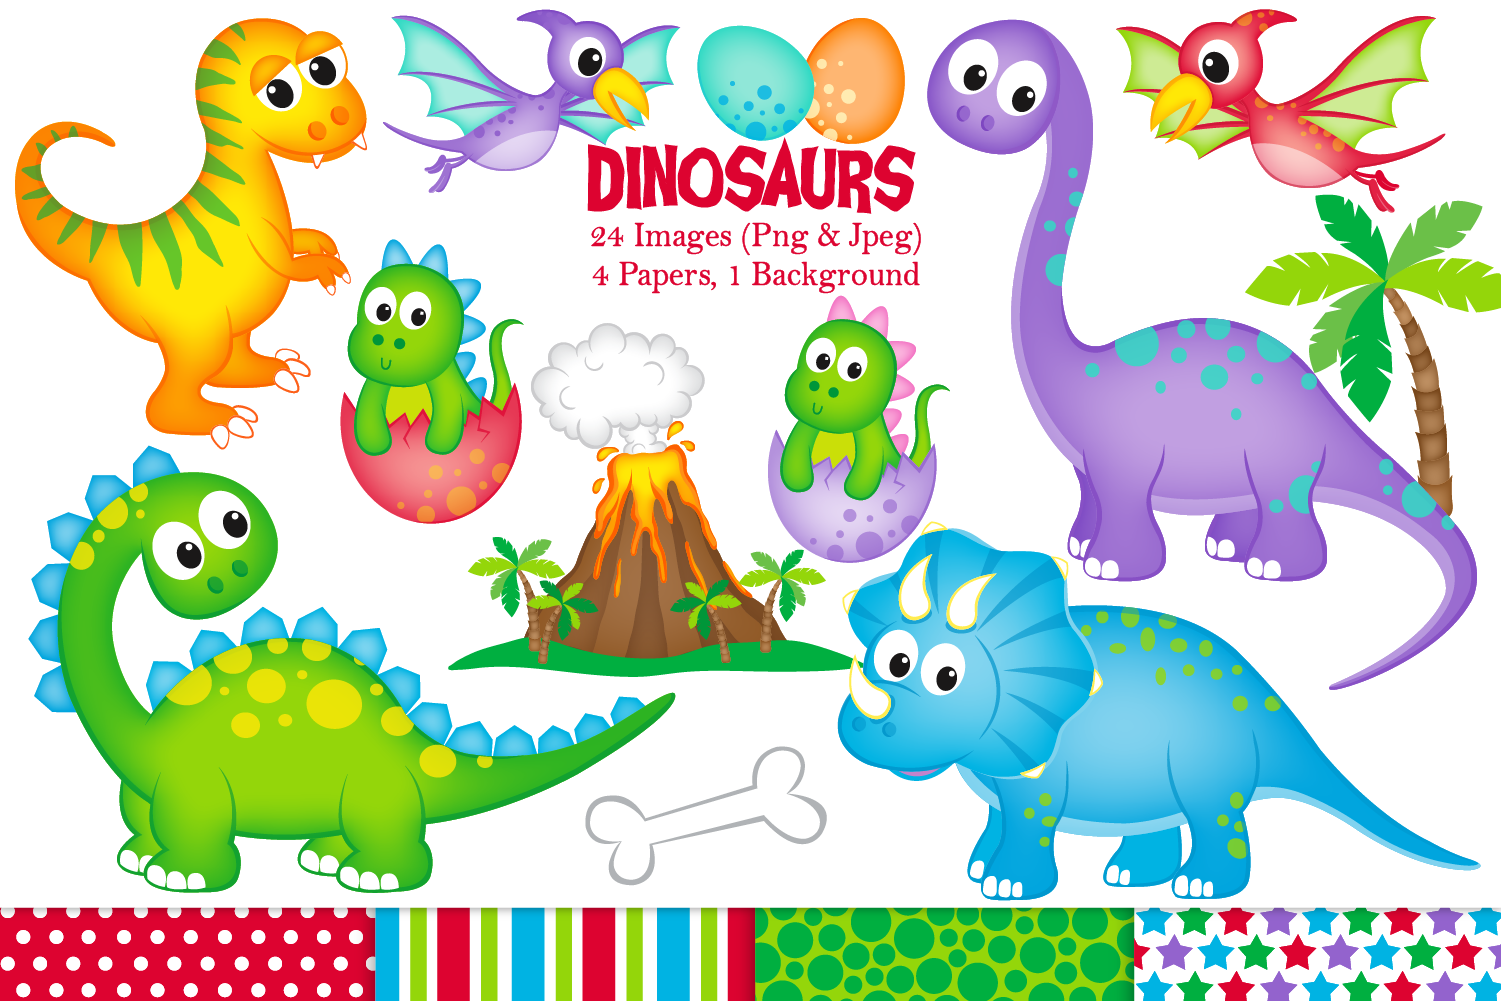 Dinosaur clipart, Dinosaurs graphics & Illustrations, T-rex